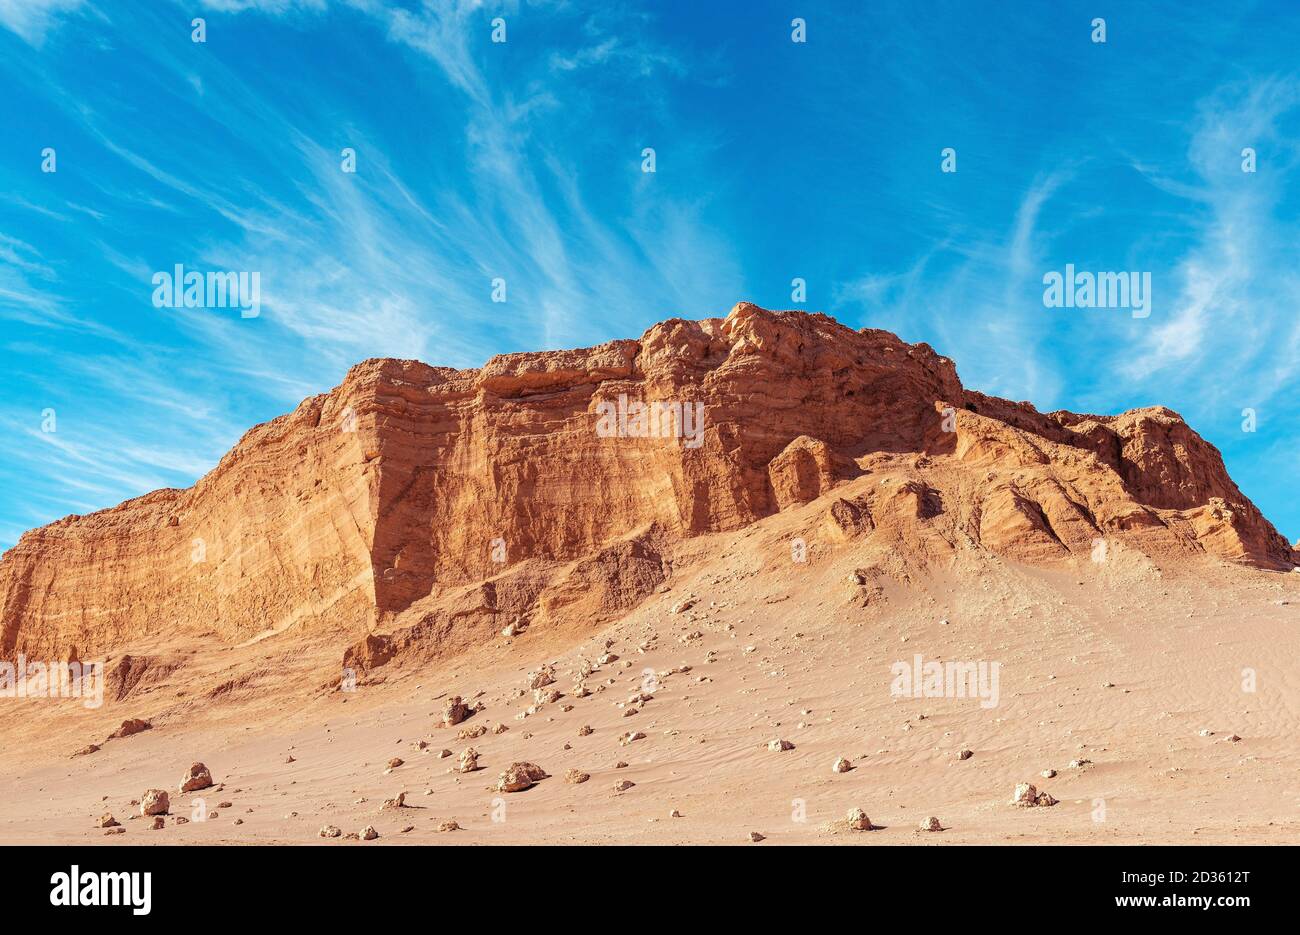 La formazione rocciosa dell'anfiteatro, Valle della Luna, deserto di Atacama, Cile. Foto Stock